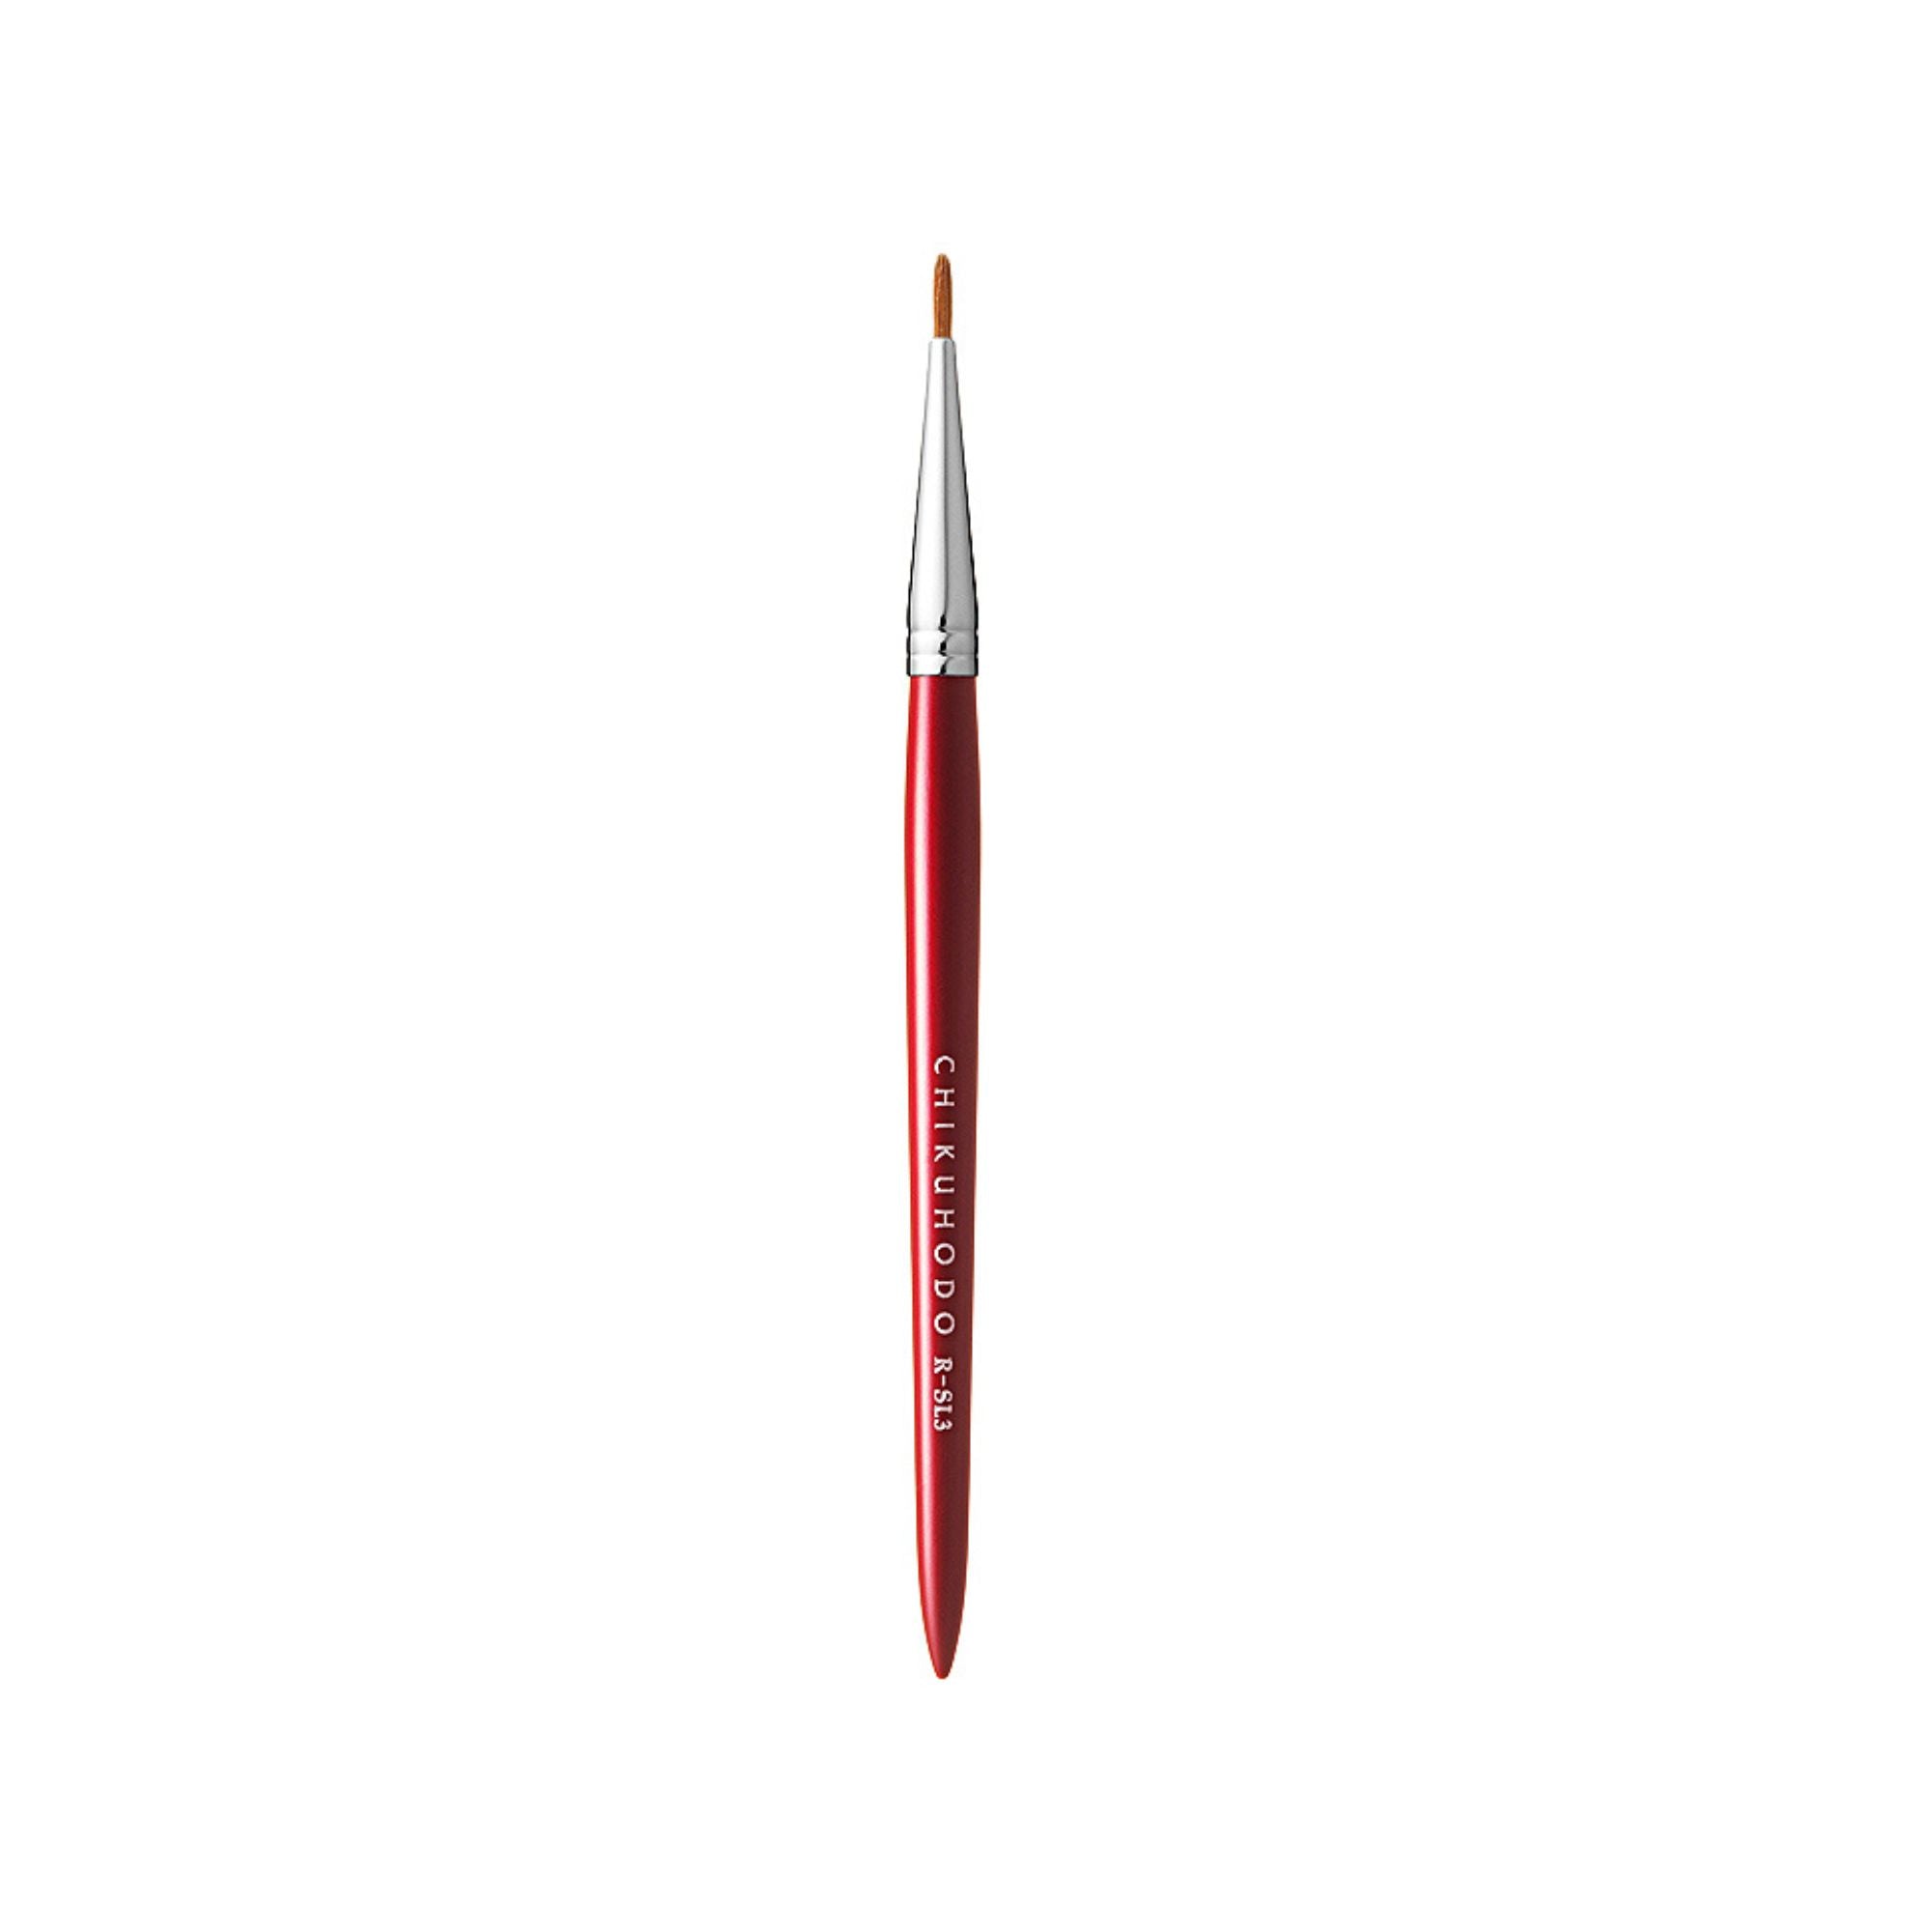 Chikuhodo Eye-Liner Brush, Regular Series (R-SL3 Black, RR-SL3 Red) - Fude Beauty, Japanese Makeup Brushes